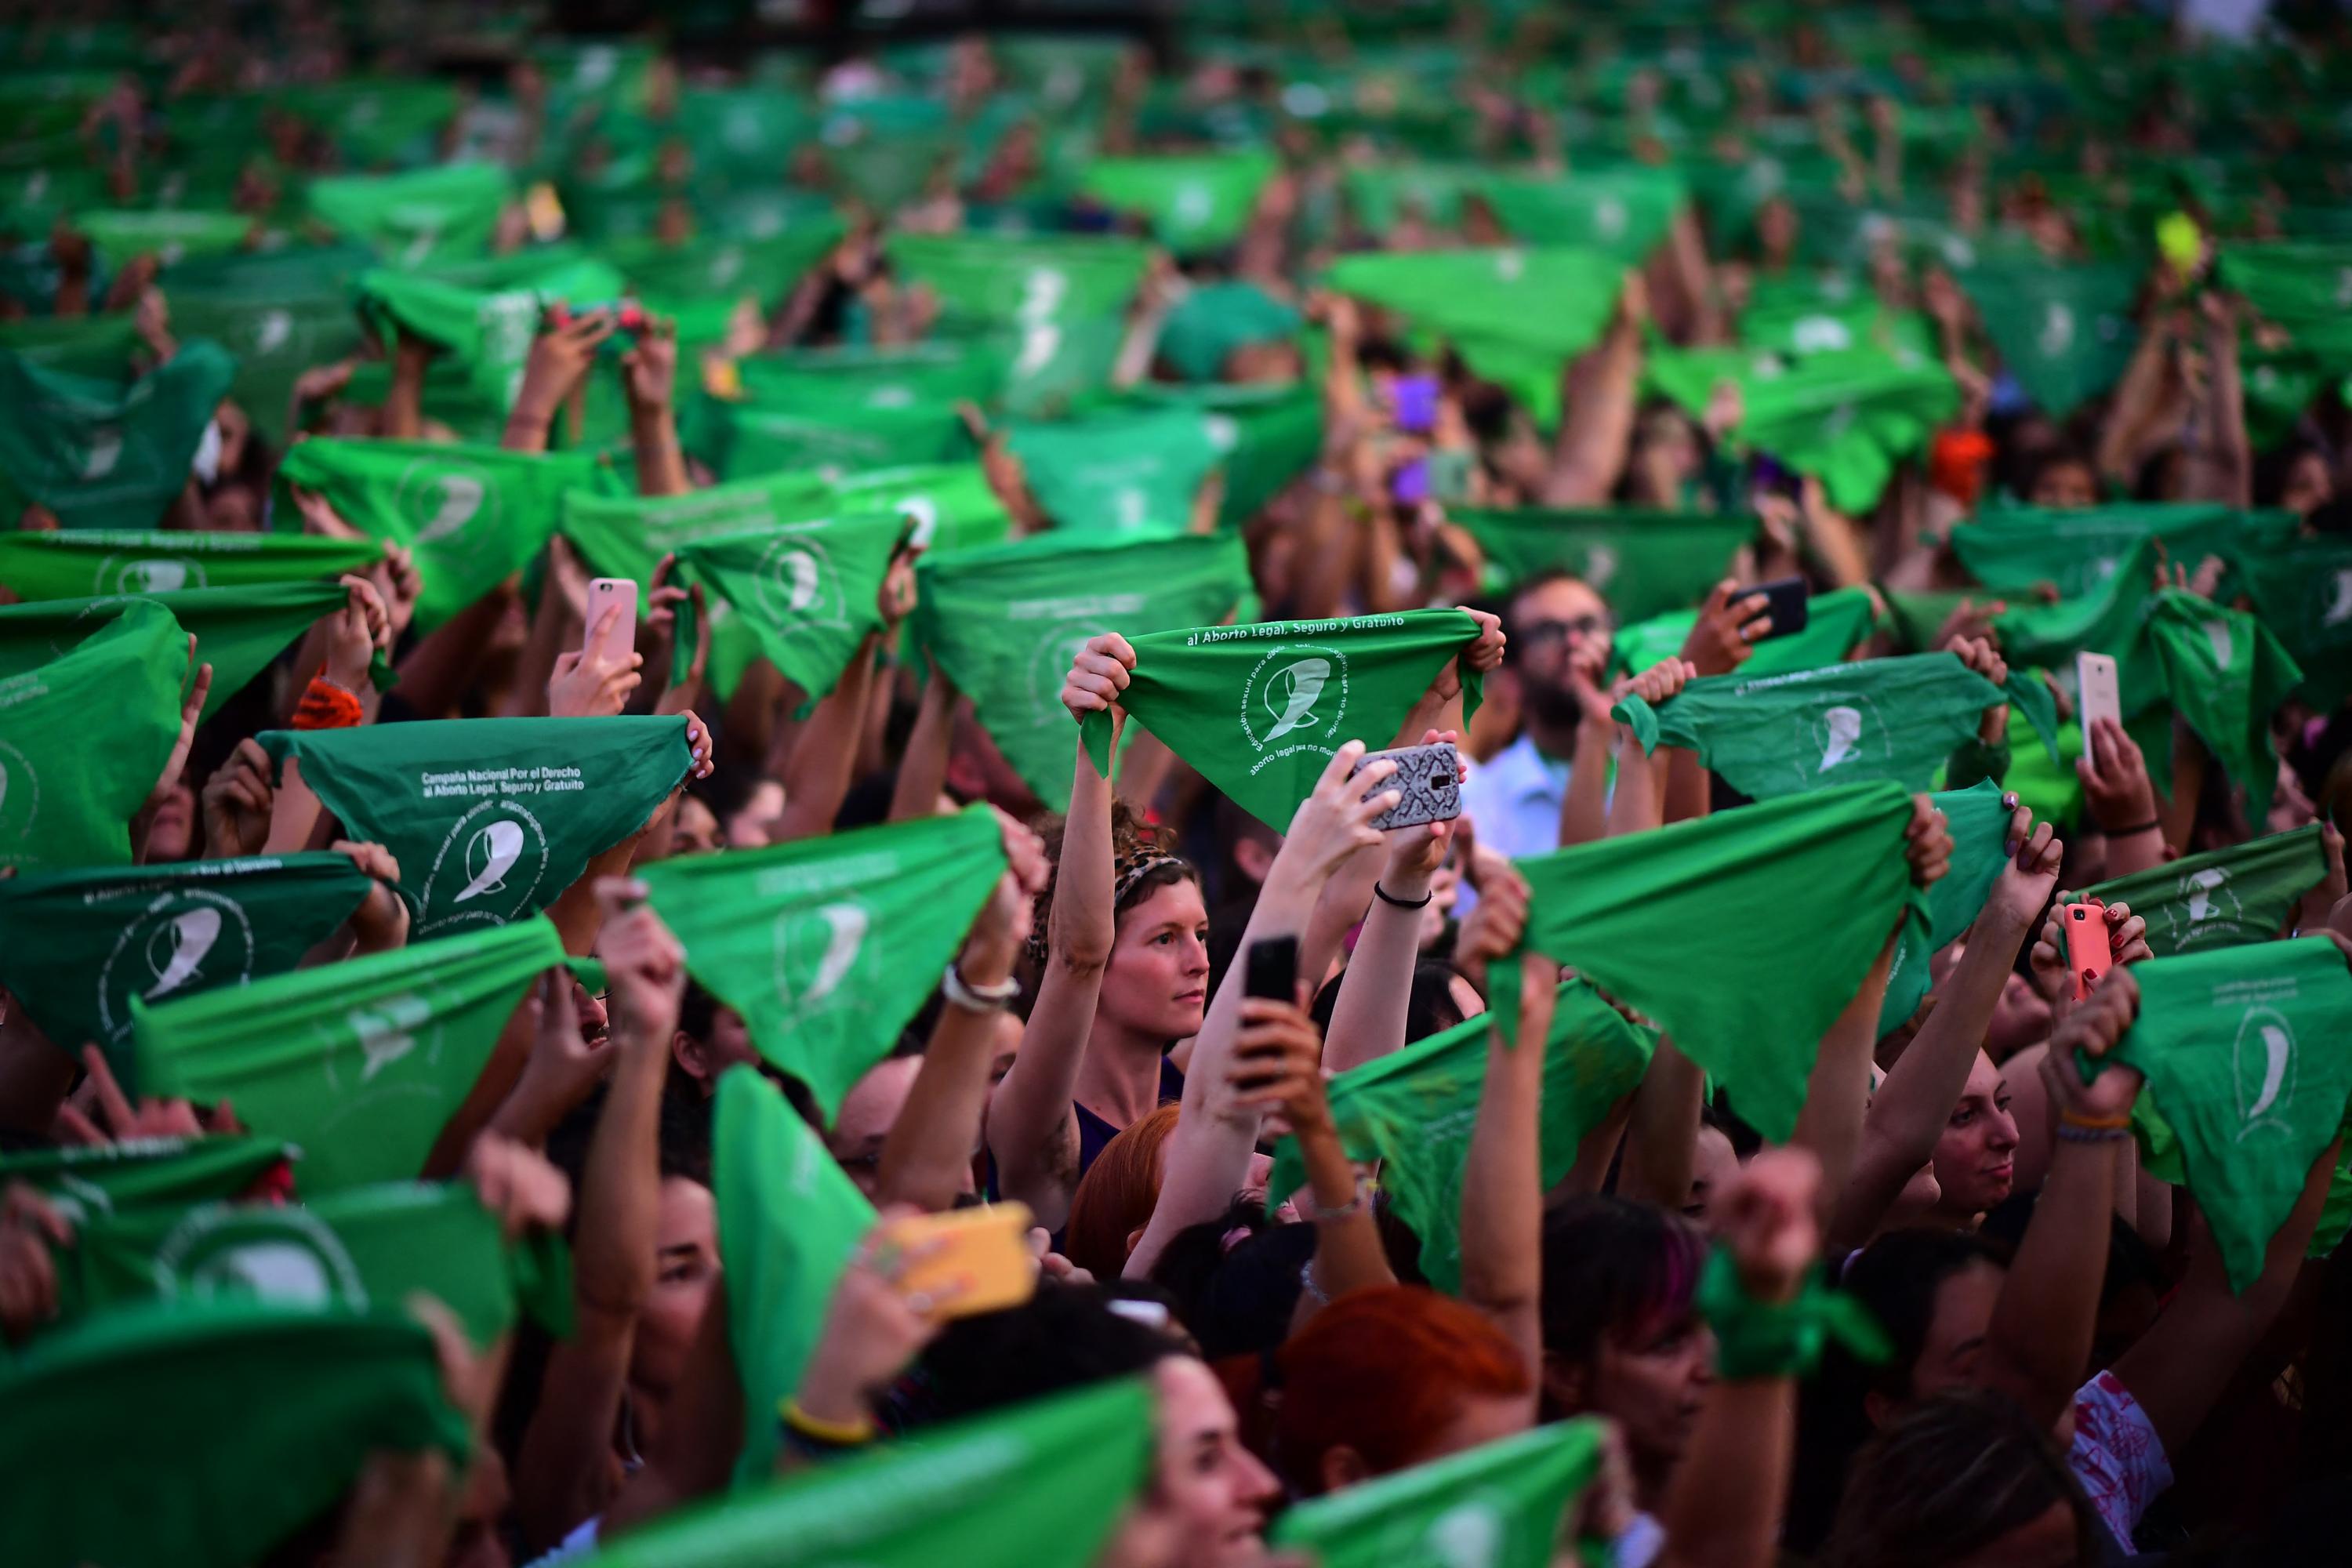 Miles de mujeres sostienen pañuelos verdes en una manifestación en Buenos Aires, Argentina, el 19 de febrero de 2020. Los pañuelos verdes son símbolo de la lucha de las mujeres por la legalización del aborto. Foto de El Faro: Ronaldo Schemidt/AFP.